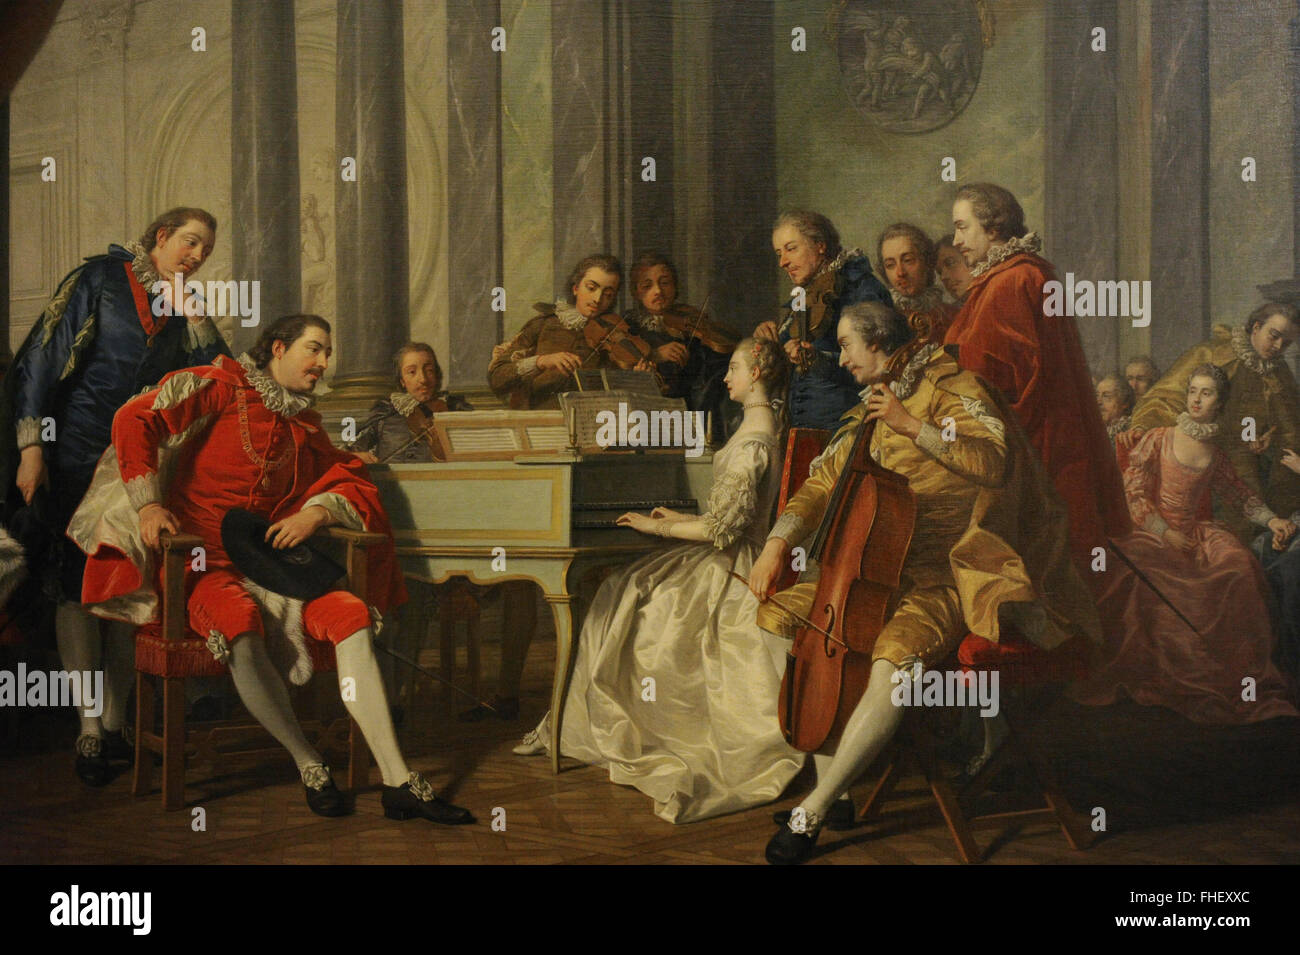 Louis Michel Vanloo (1707-1771). Le peintre français. Sextet (Espagnol), 1768 Concert. Le Musée de l'Ermitage. Saint Petersburg. La Russie. Banque D'Images